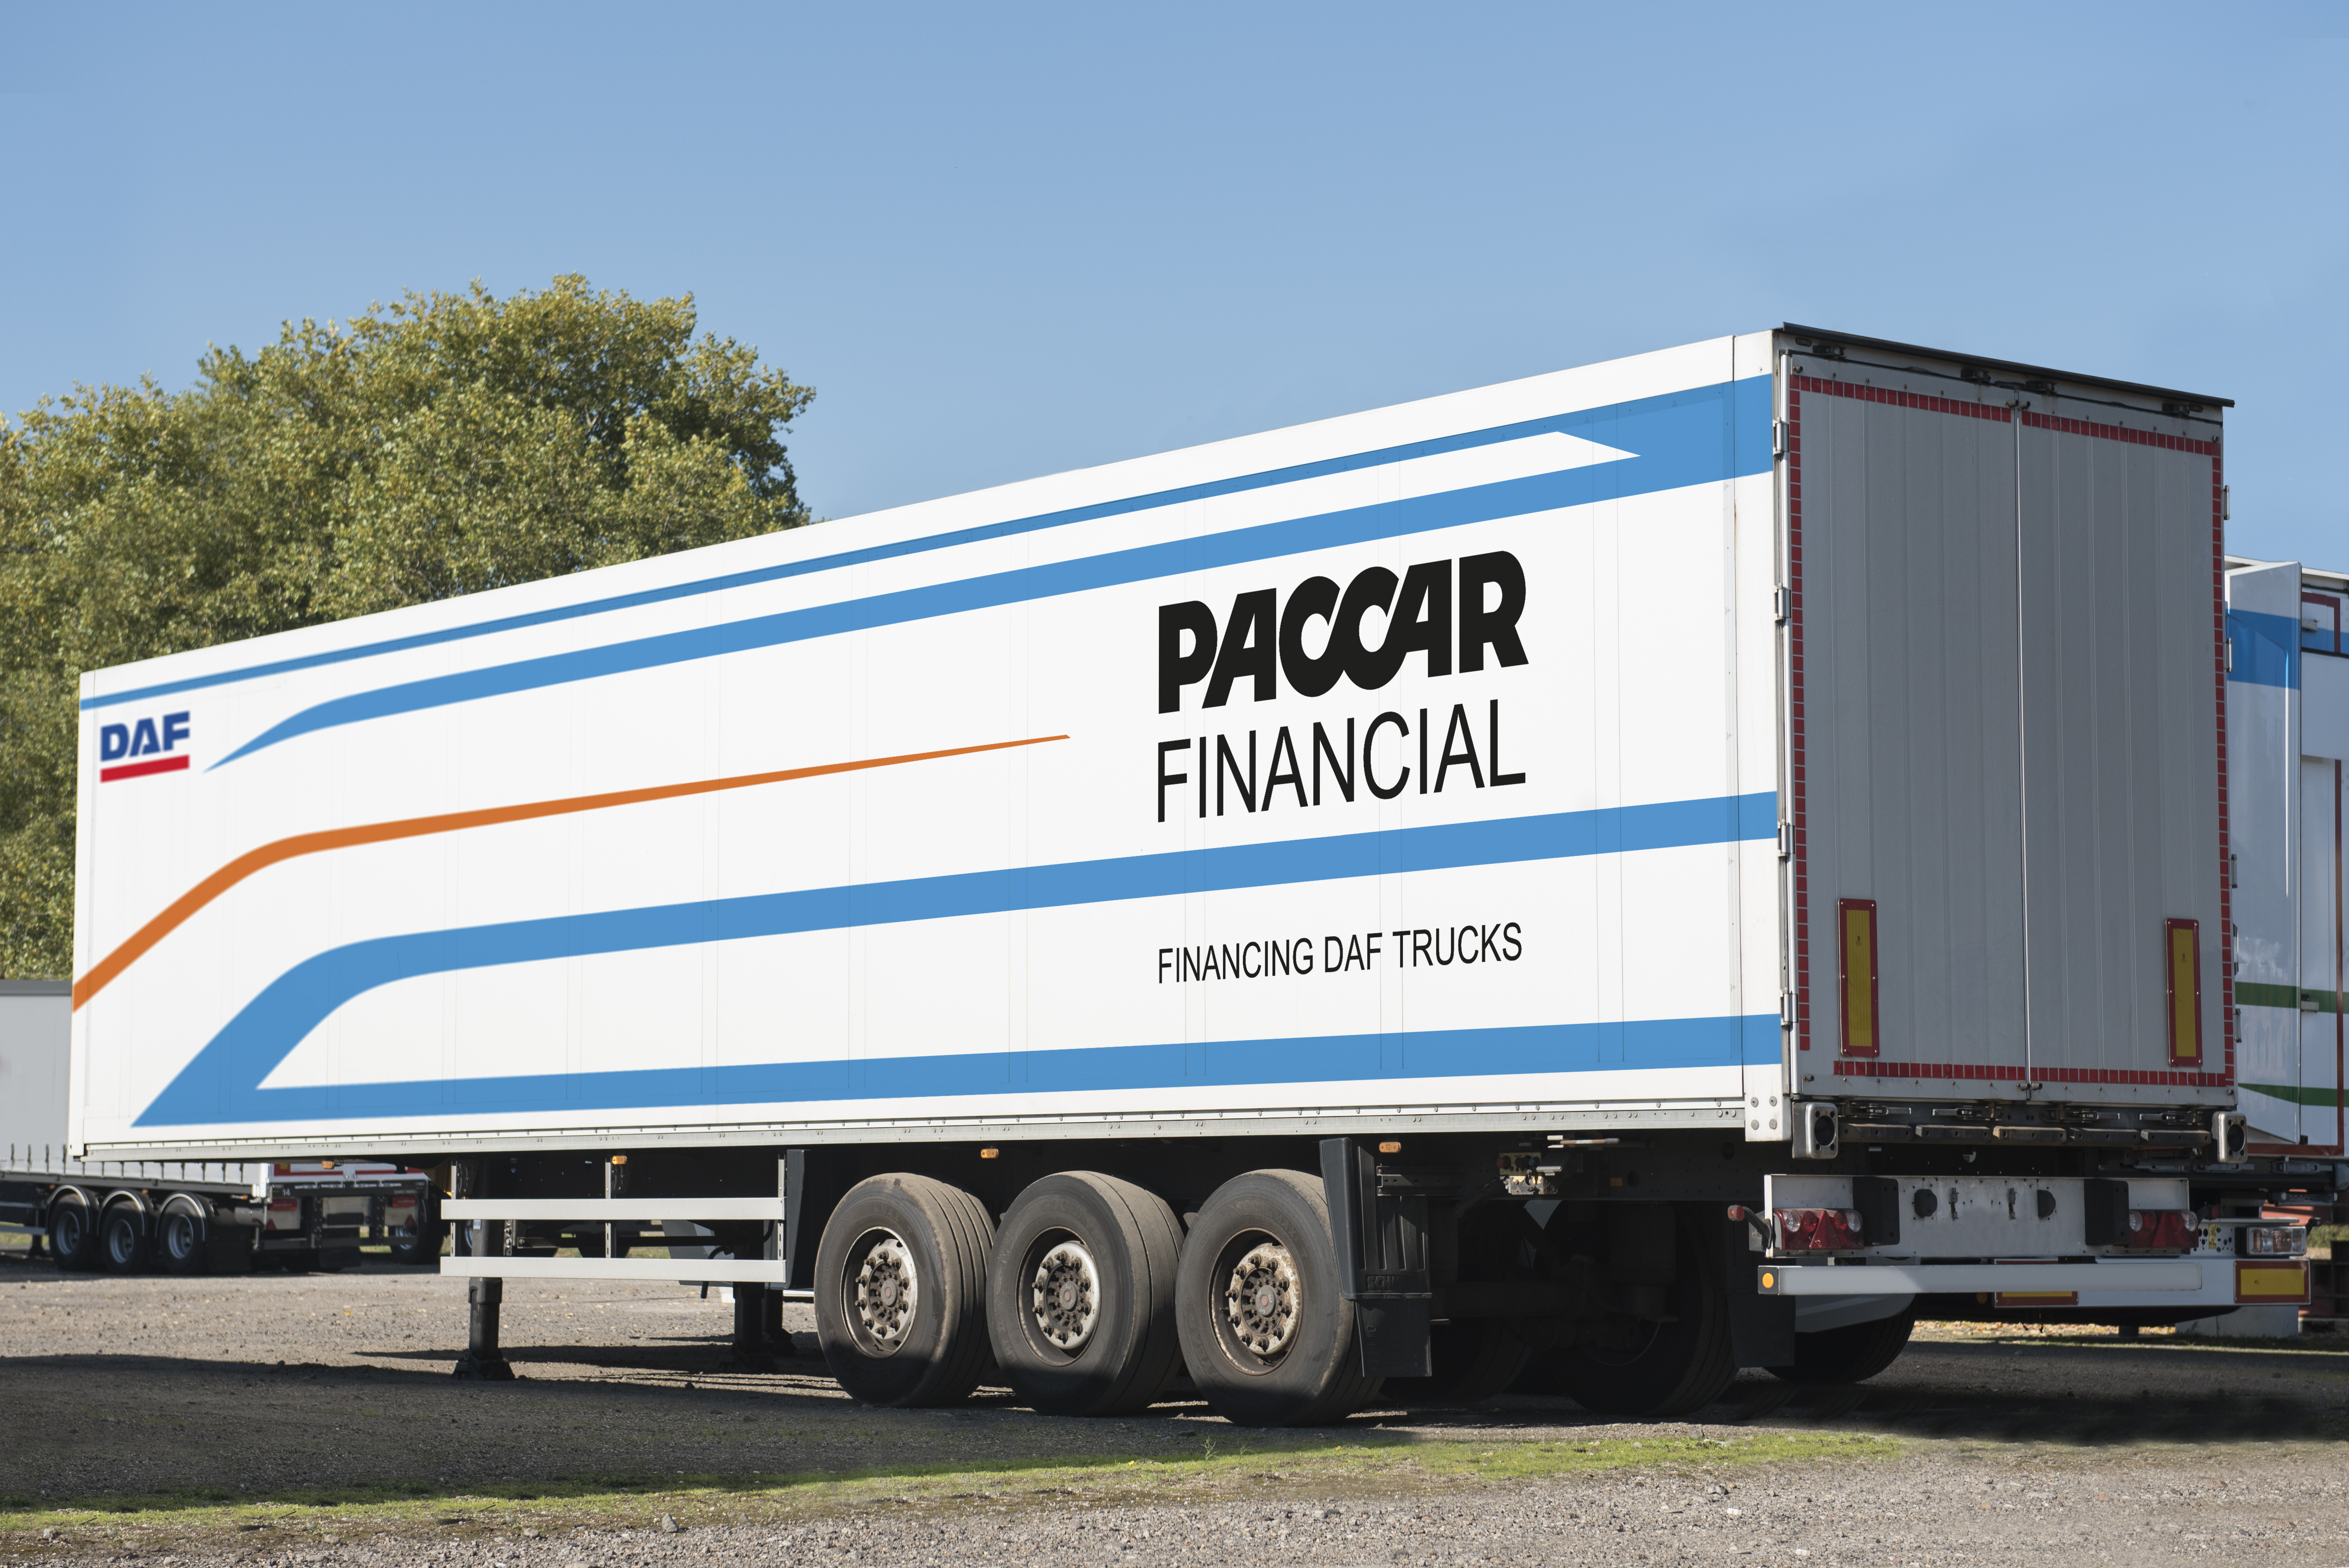 PACCAR-Financial-Trailer-2018